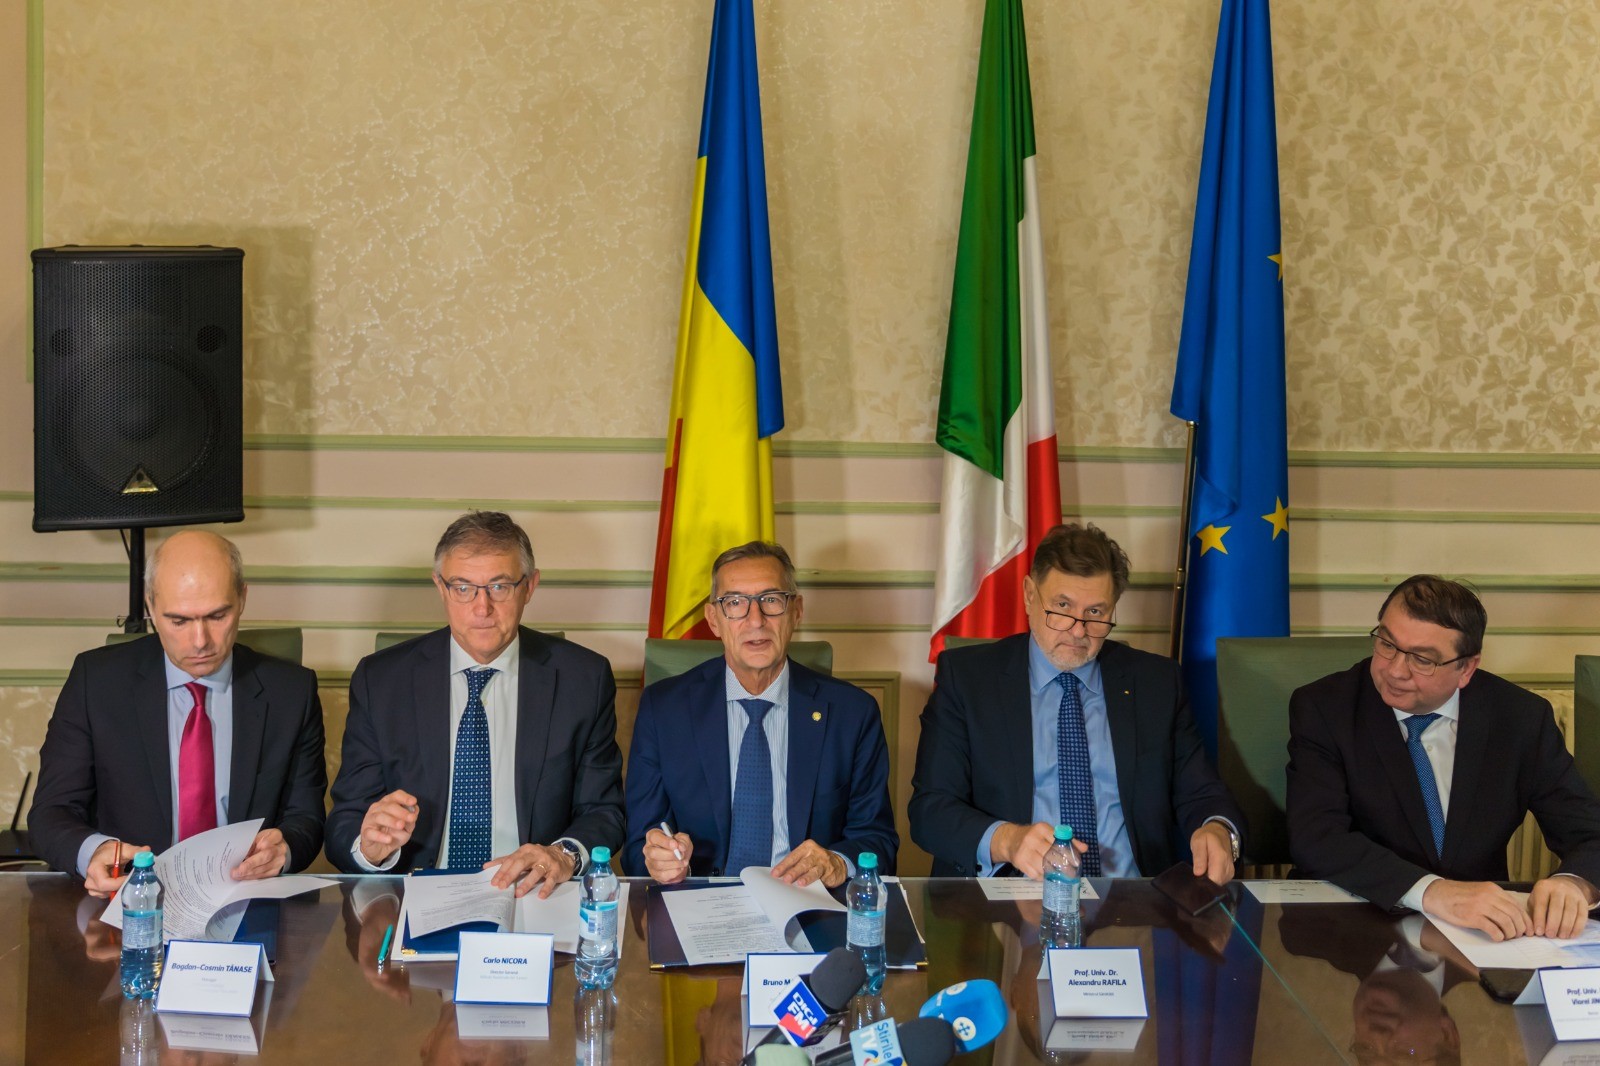  Accordo quadro di collaborazione istituzionale italo-romena 